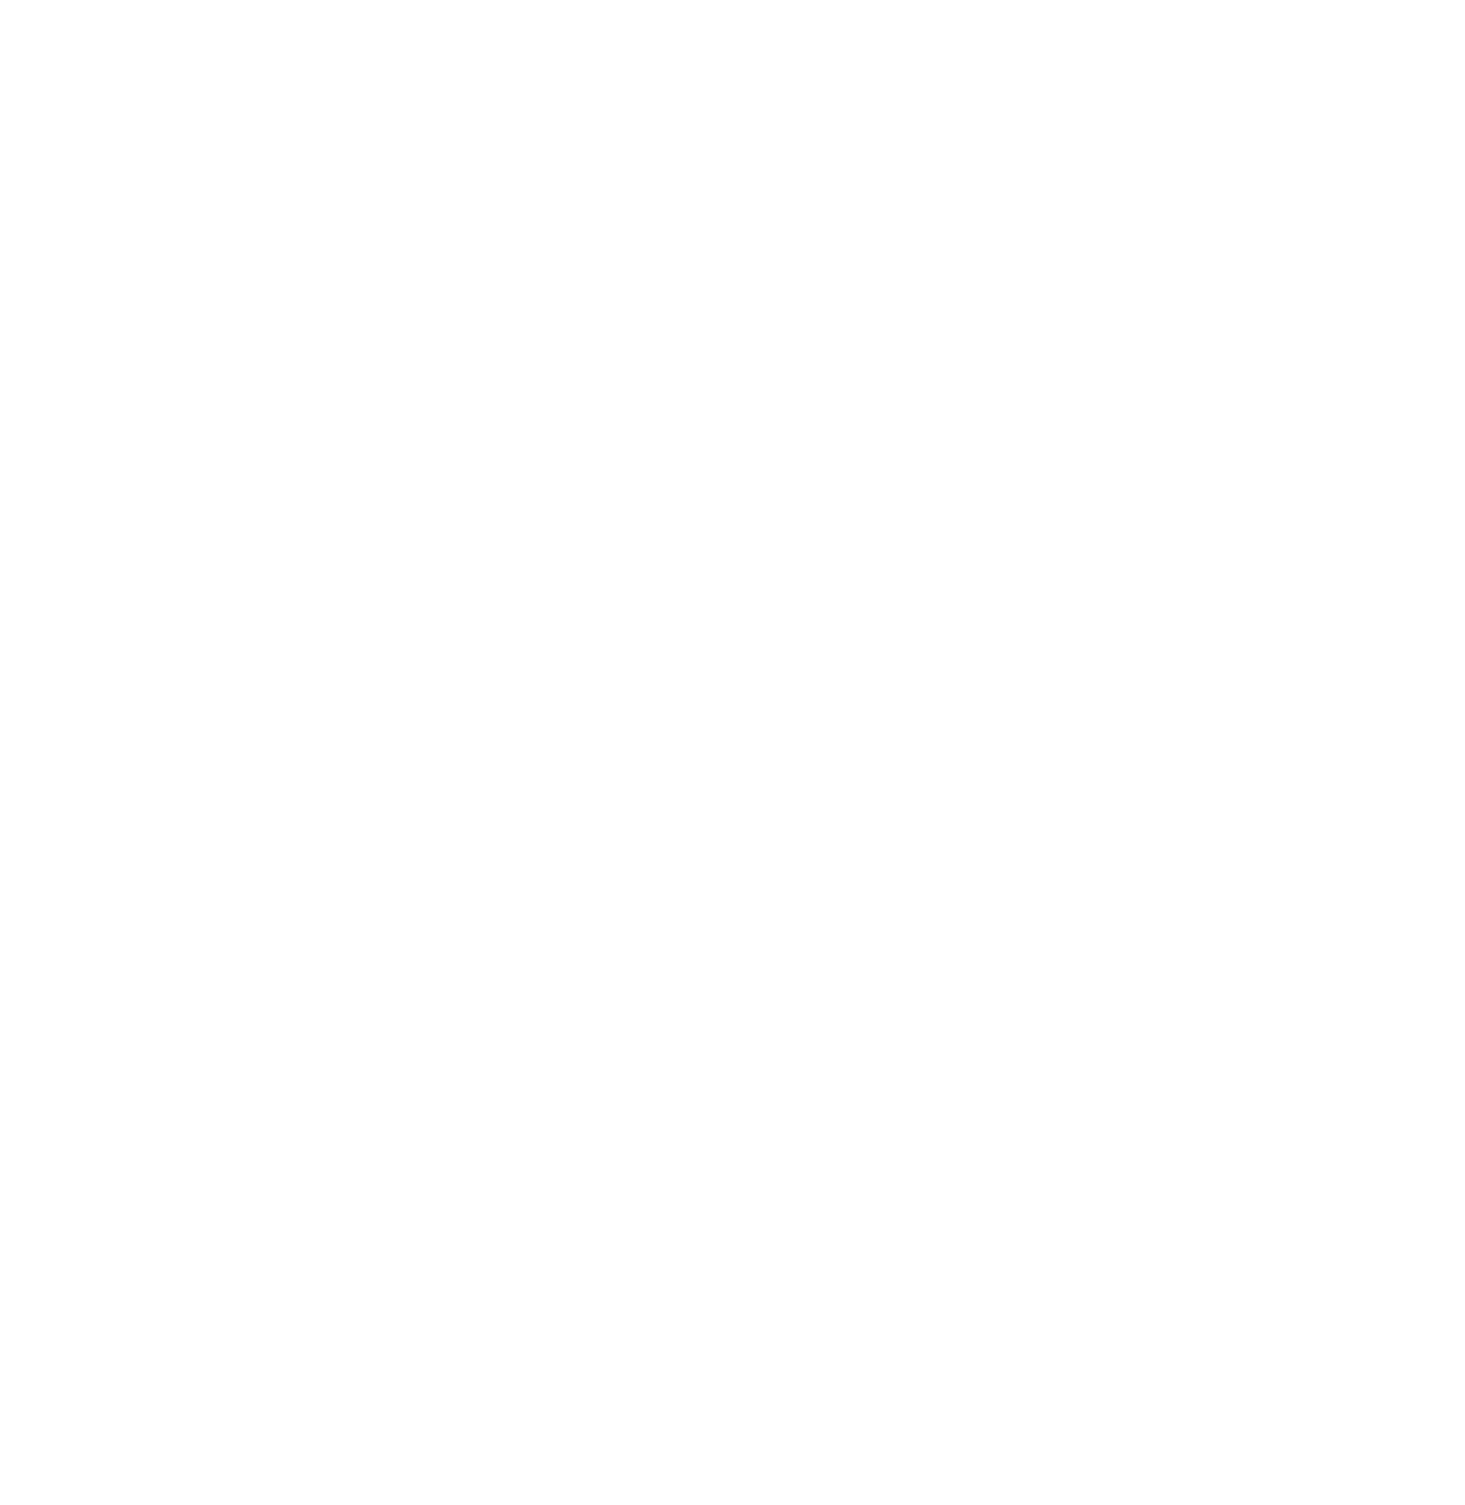 Ecopro BM logo for dark backgrounds (transparent PNG)